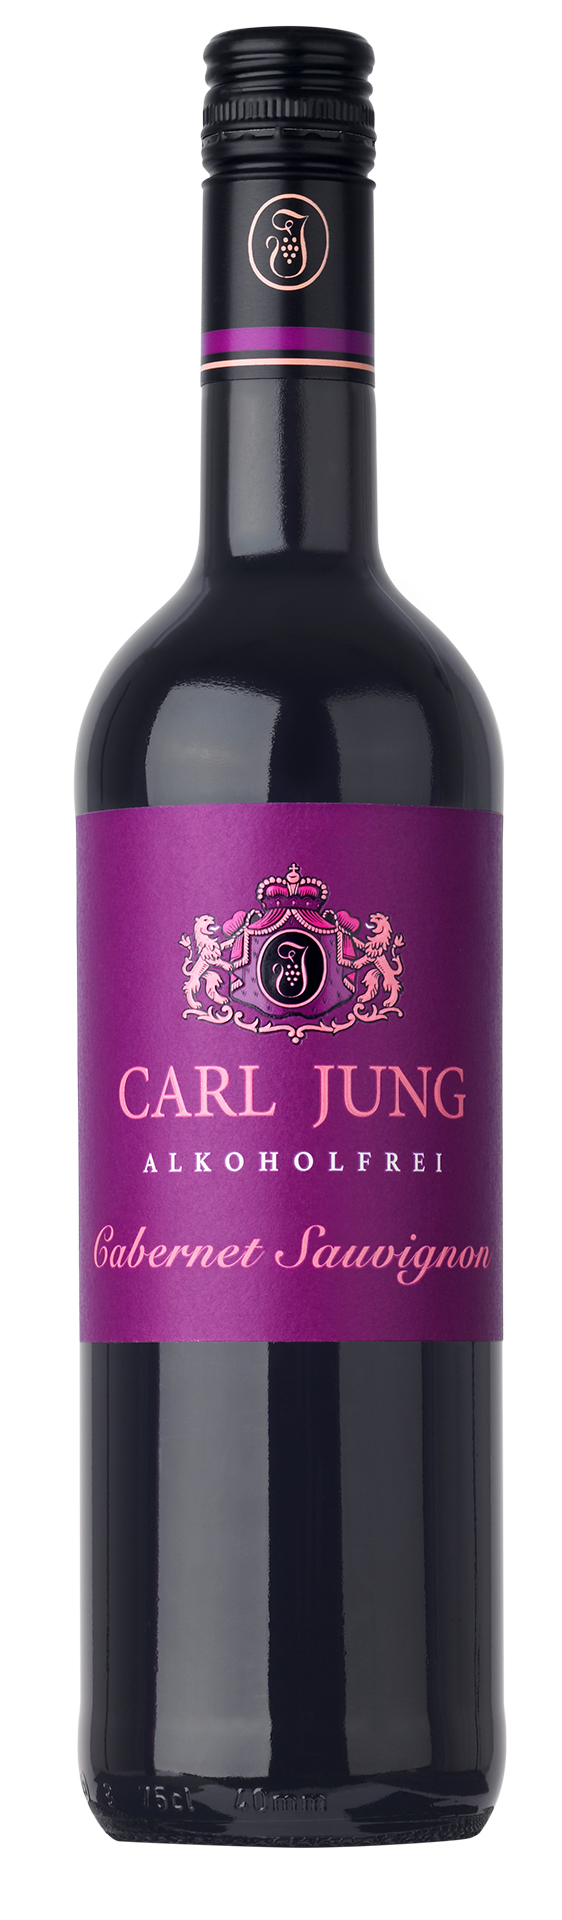 Carl - Rotwein Merlot 0,75l Jung alkoholfreier